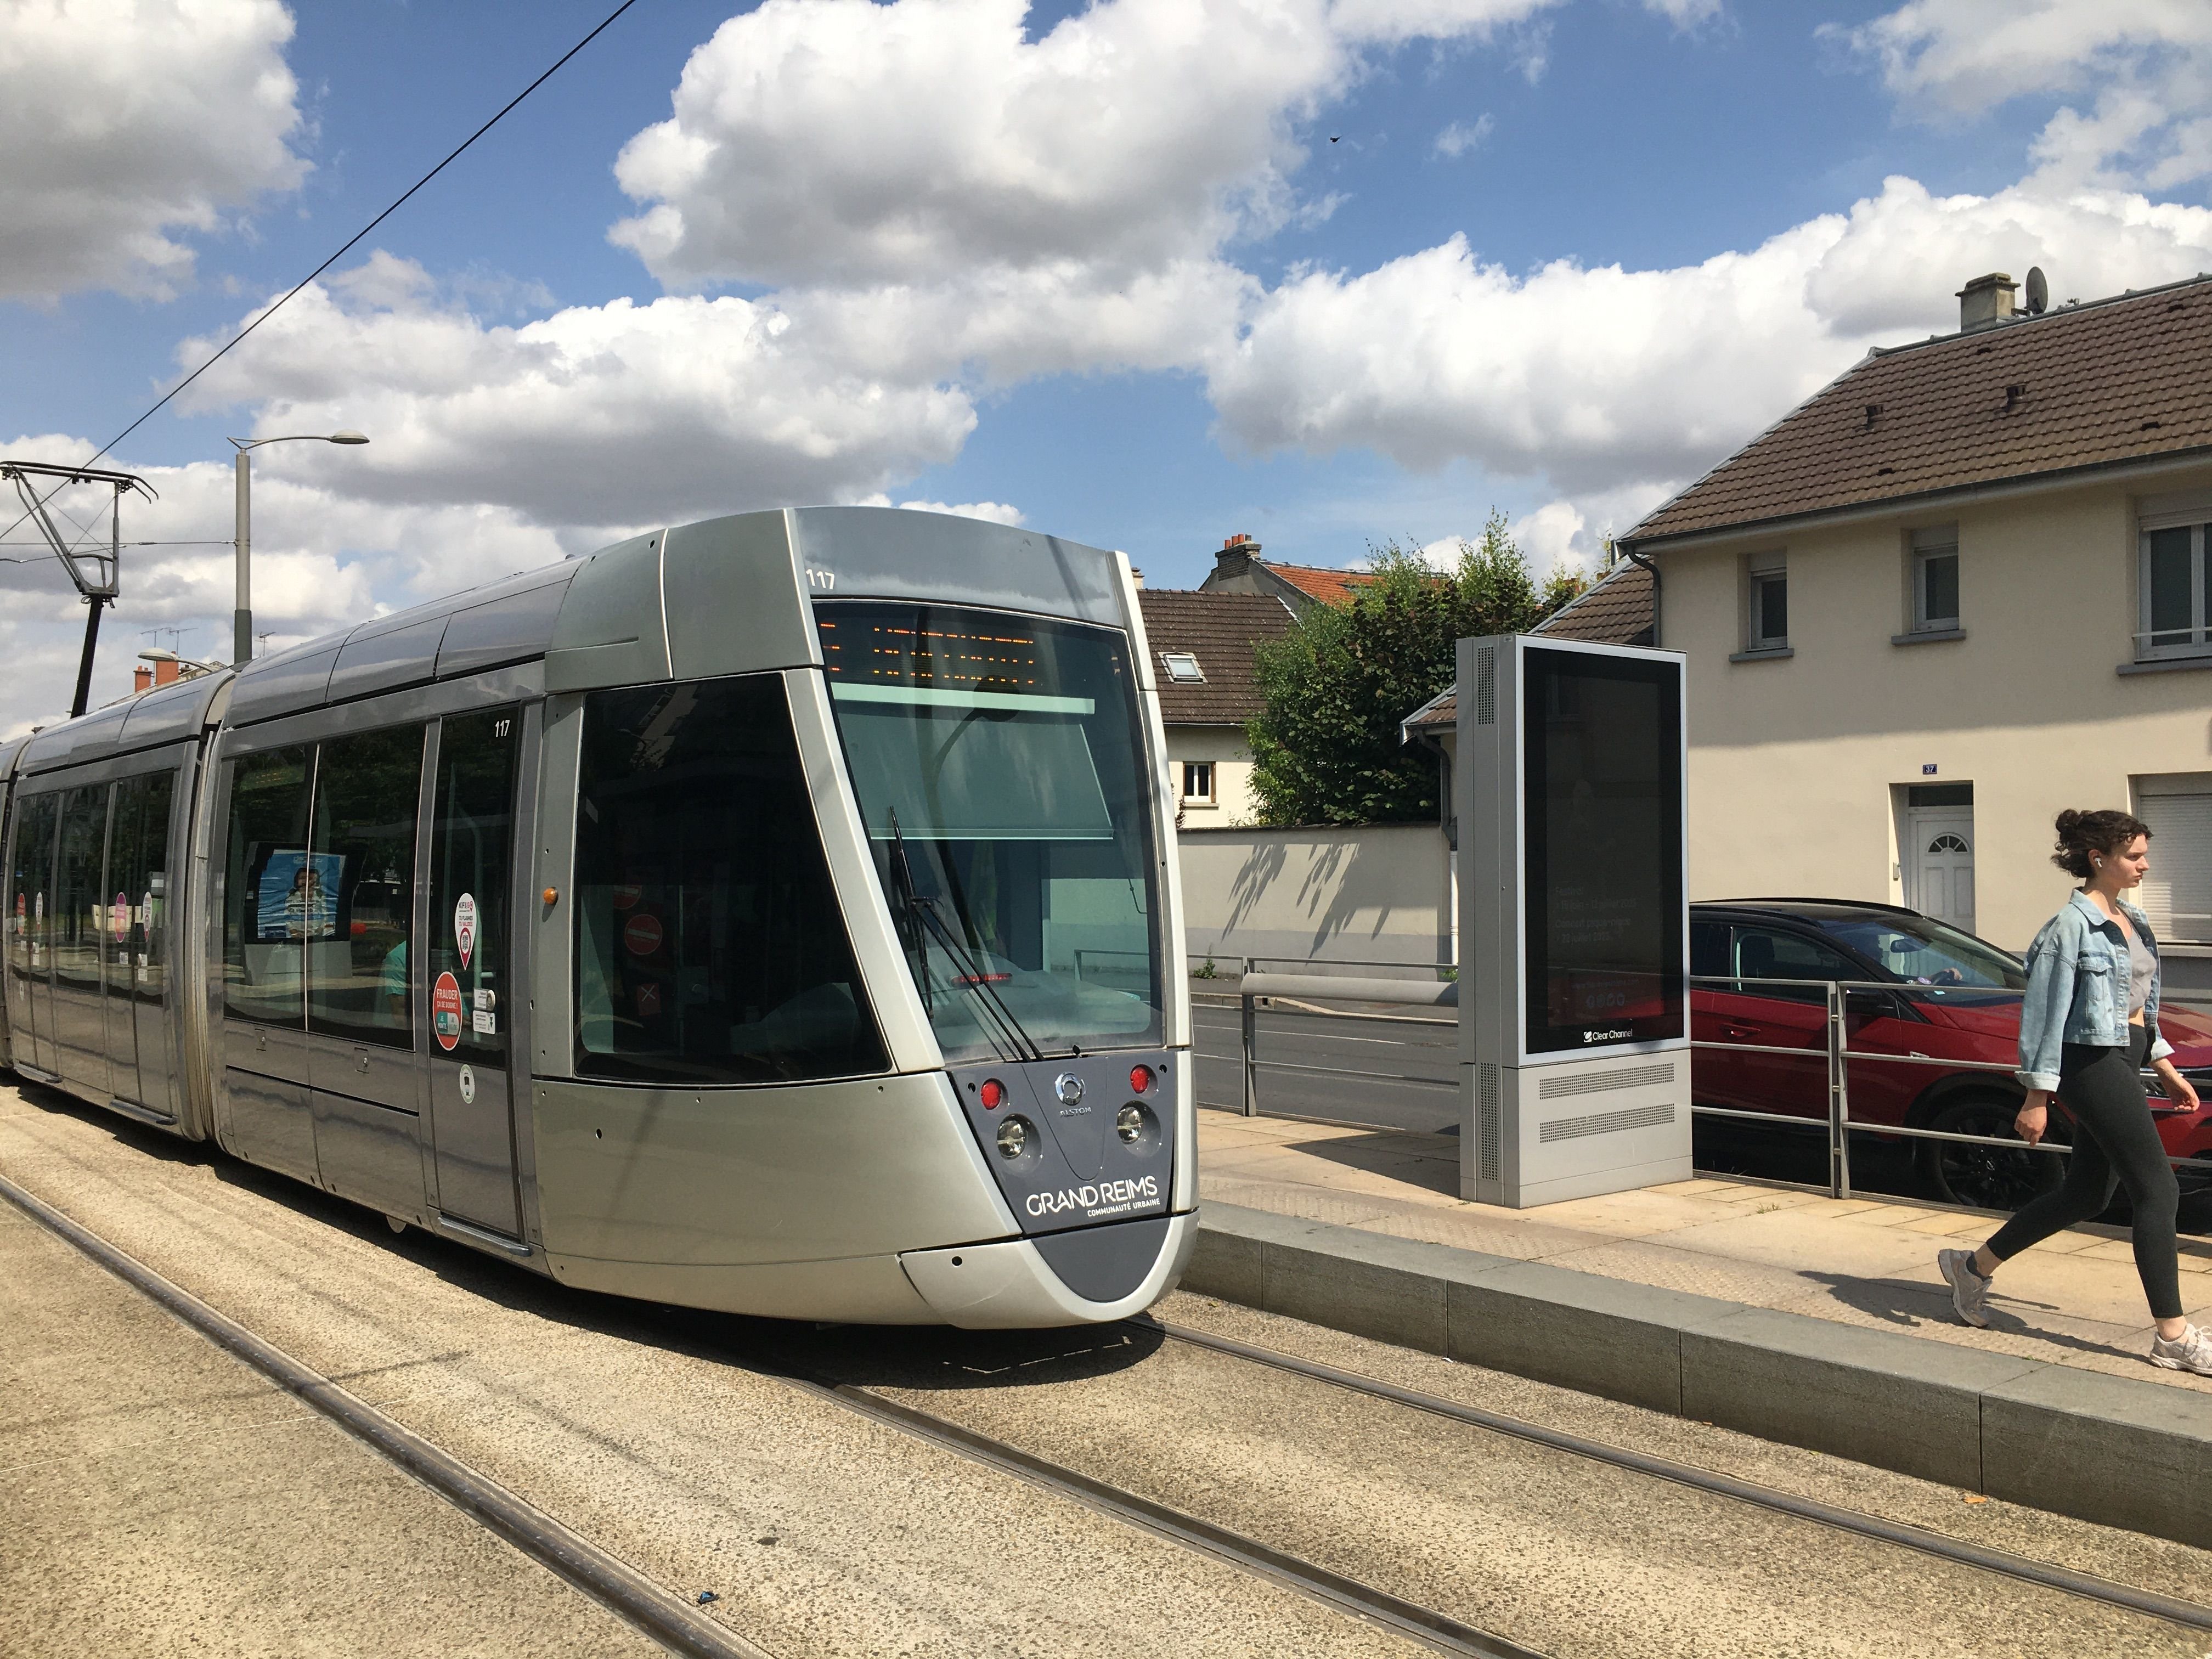 Le tramway a repris du service ce lundi matin à Reims mais seulement sur une portion du réseau regroupant 14 arrêts. Des réparations doivent encore être effectuées sur le mobilier, les éléments de signalisation ou les arrêts de tramway dégradés la semaine dernière. LP/Marie Blanchardon